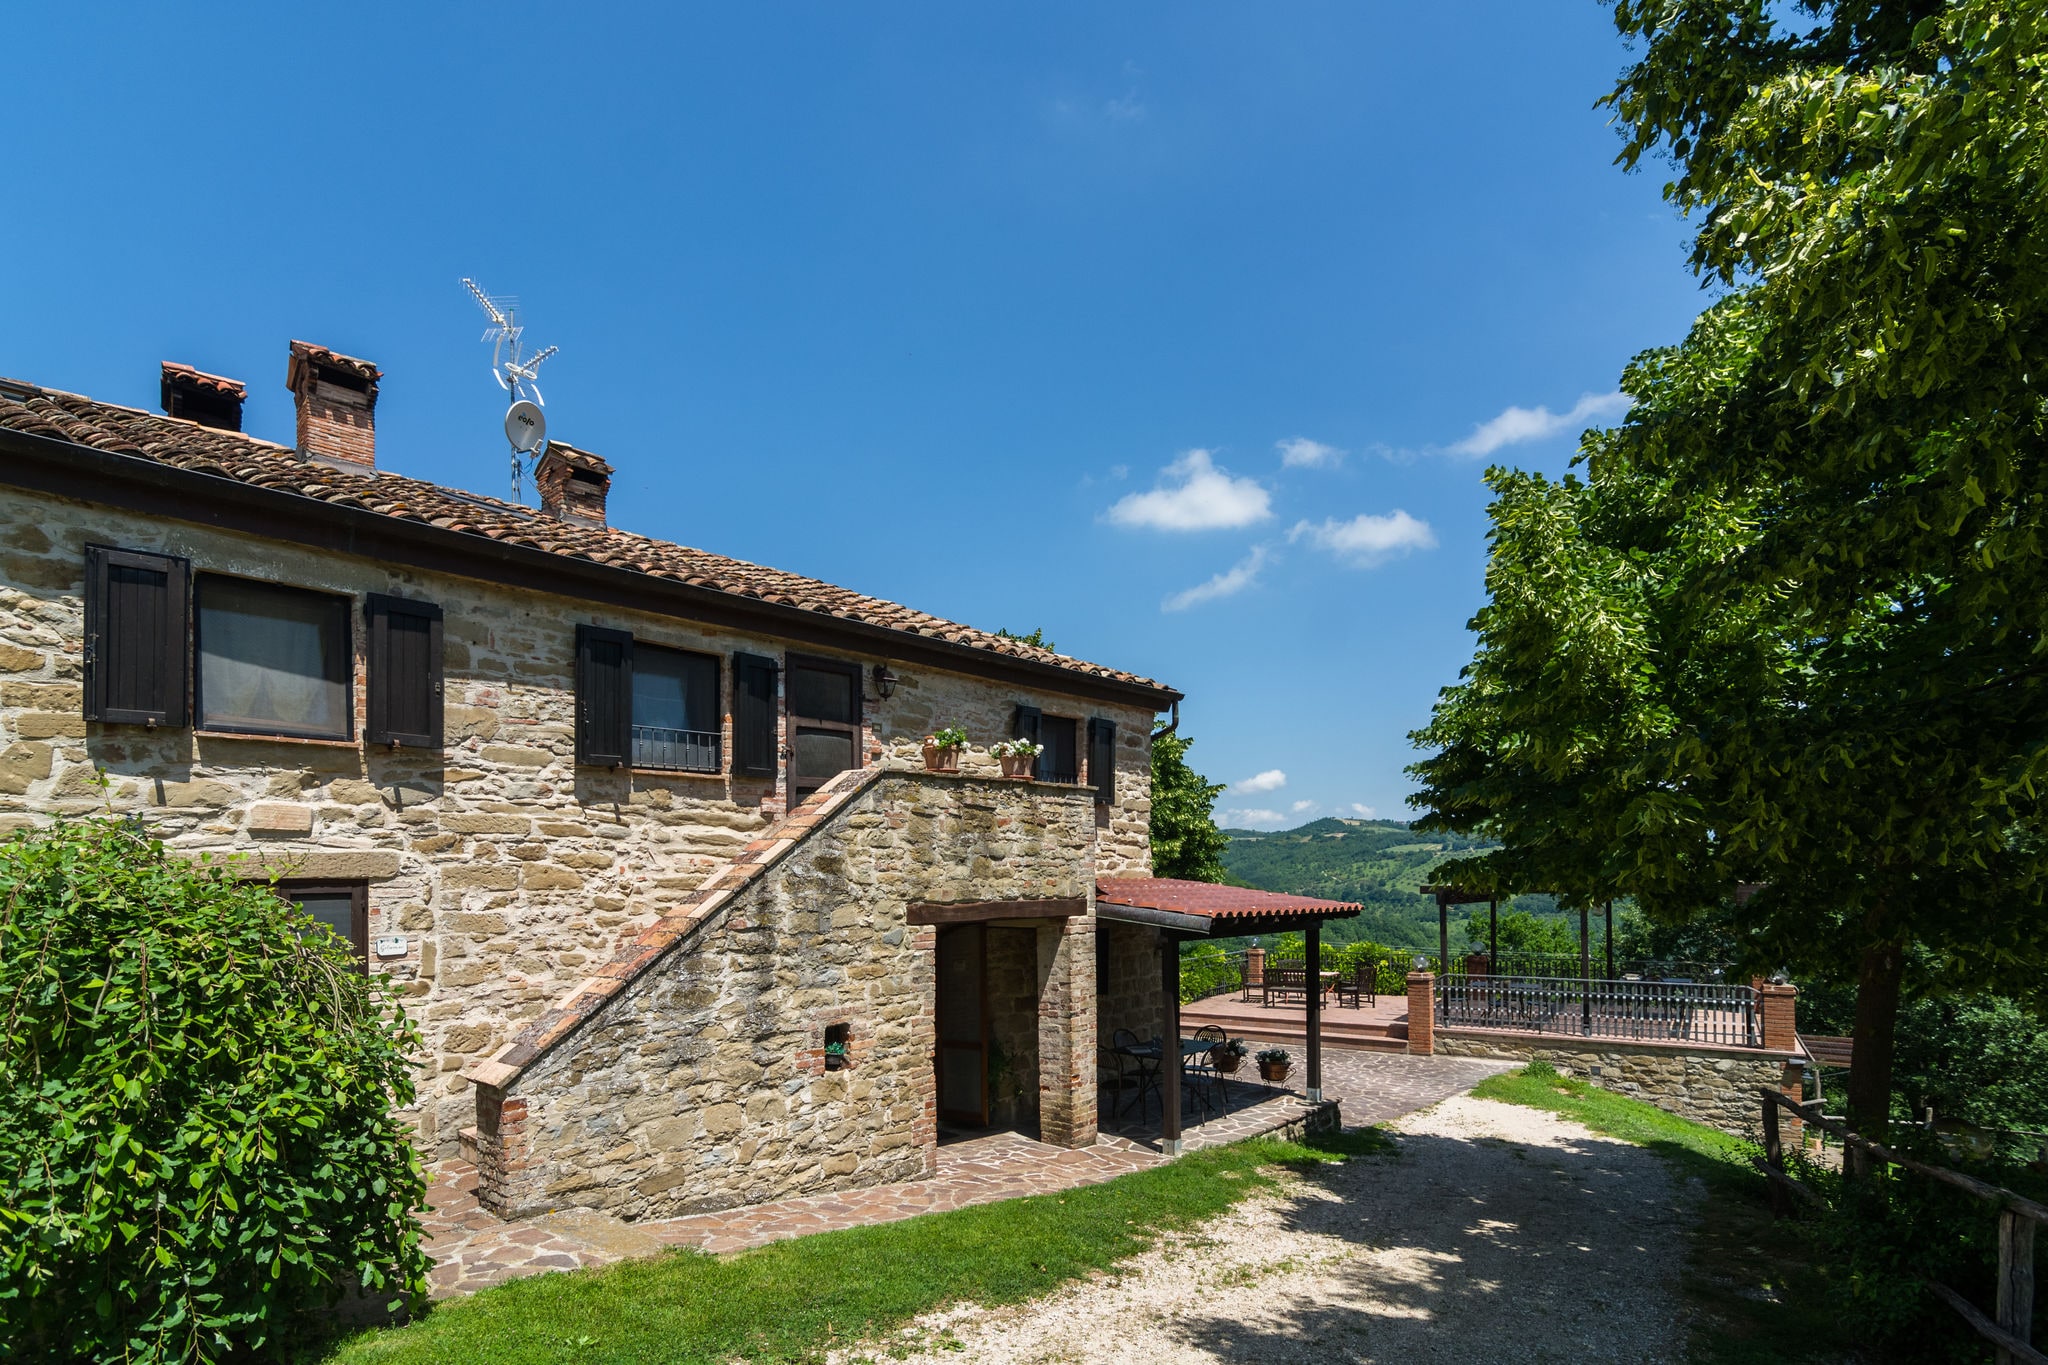 Chic Farmhouse with Hill View in Fratticiola Selvatica Italy